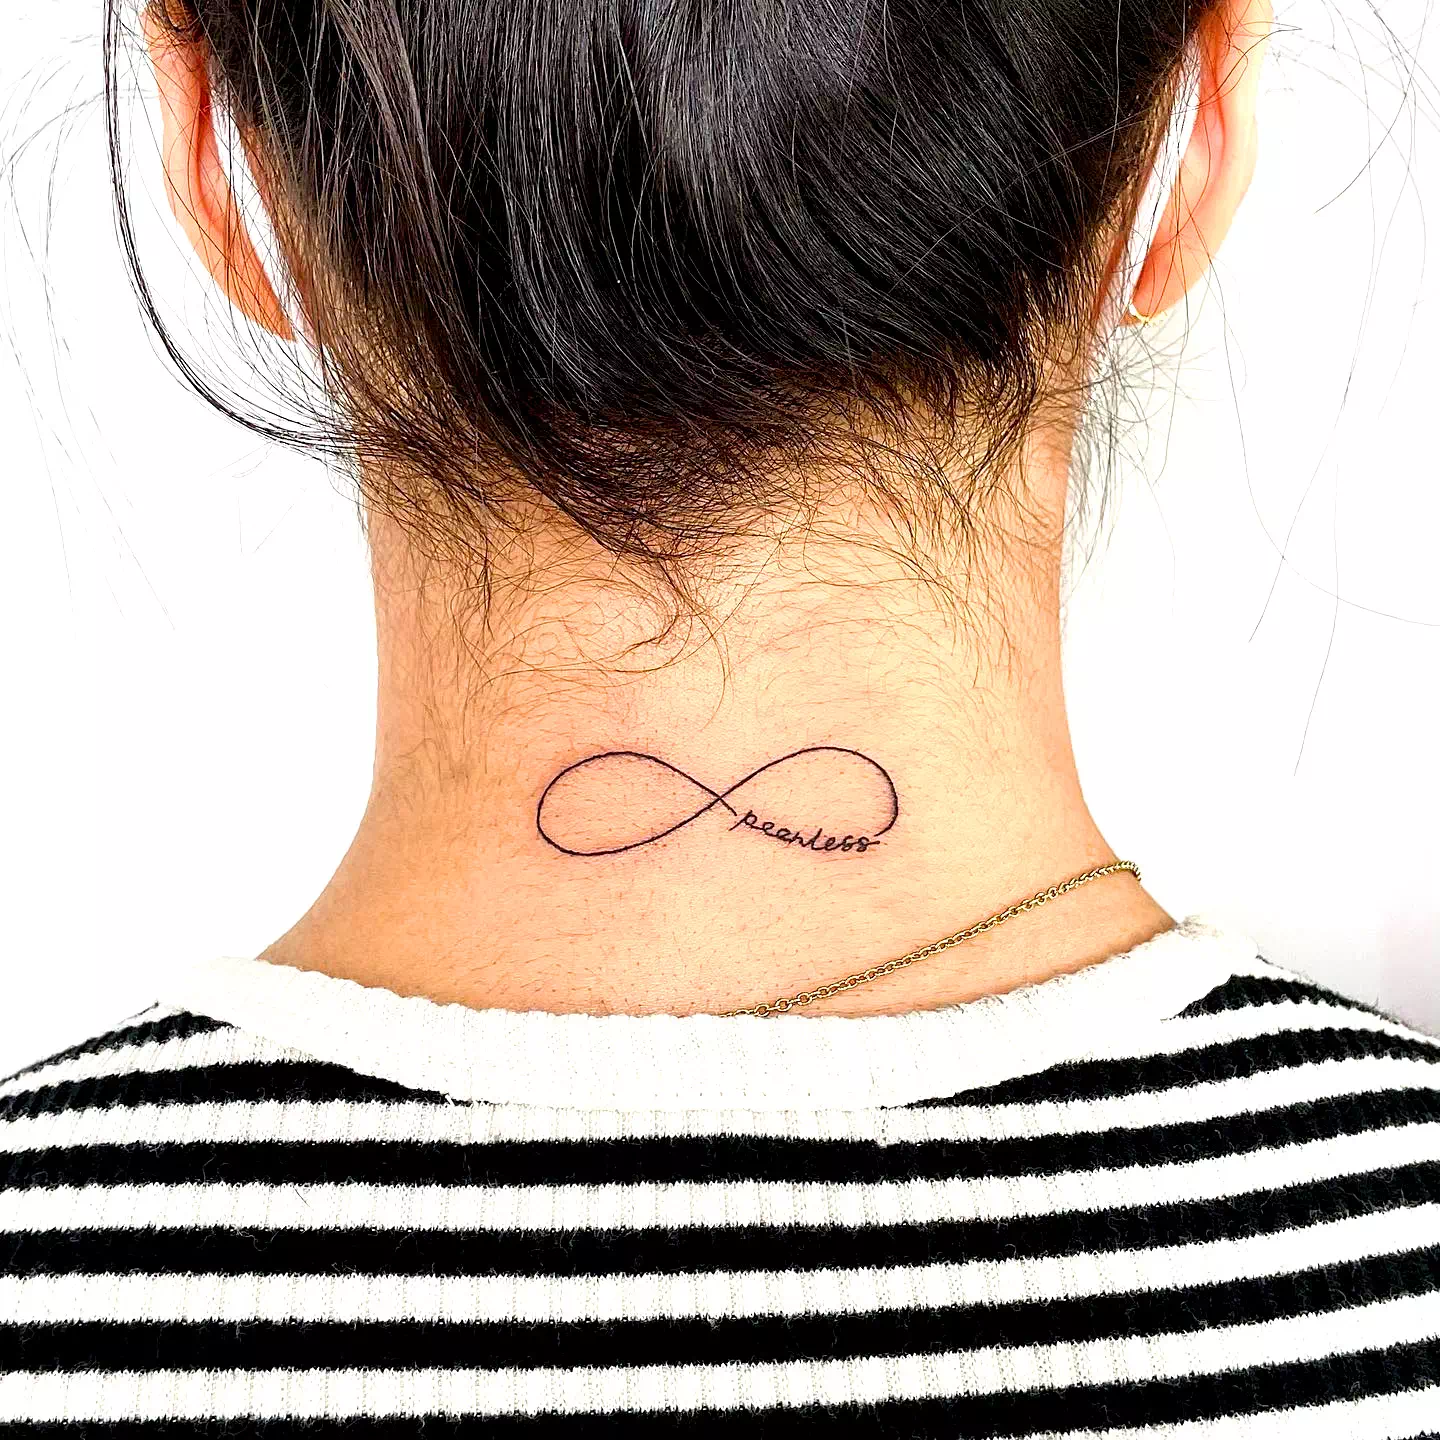 Tatuaje minimalista en el cuello 3